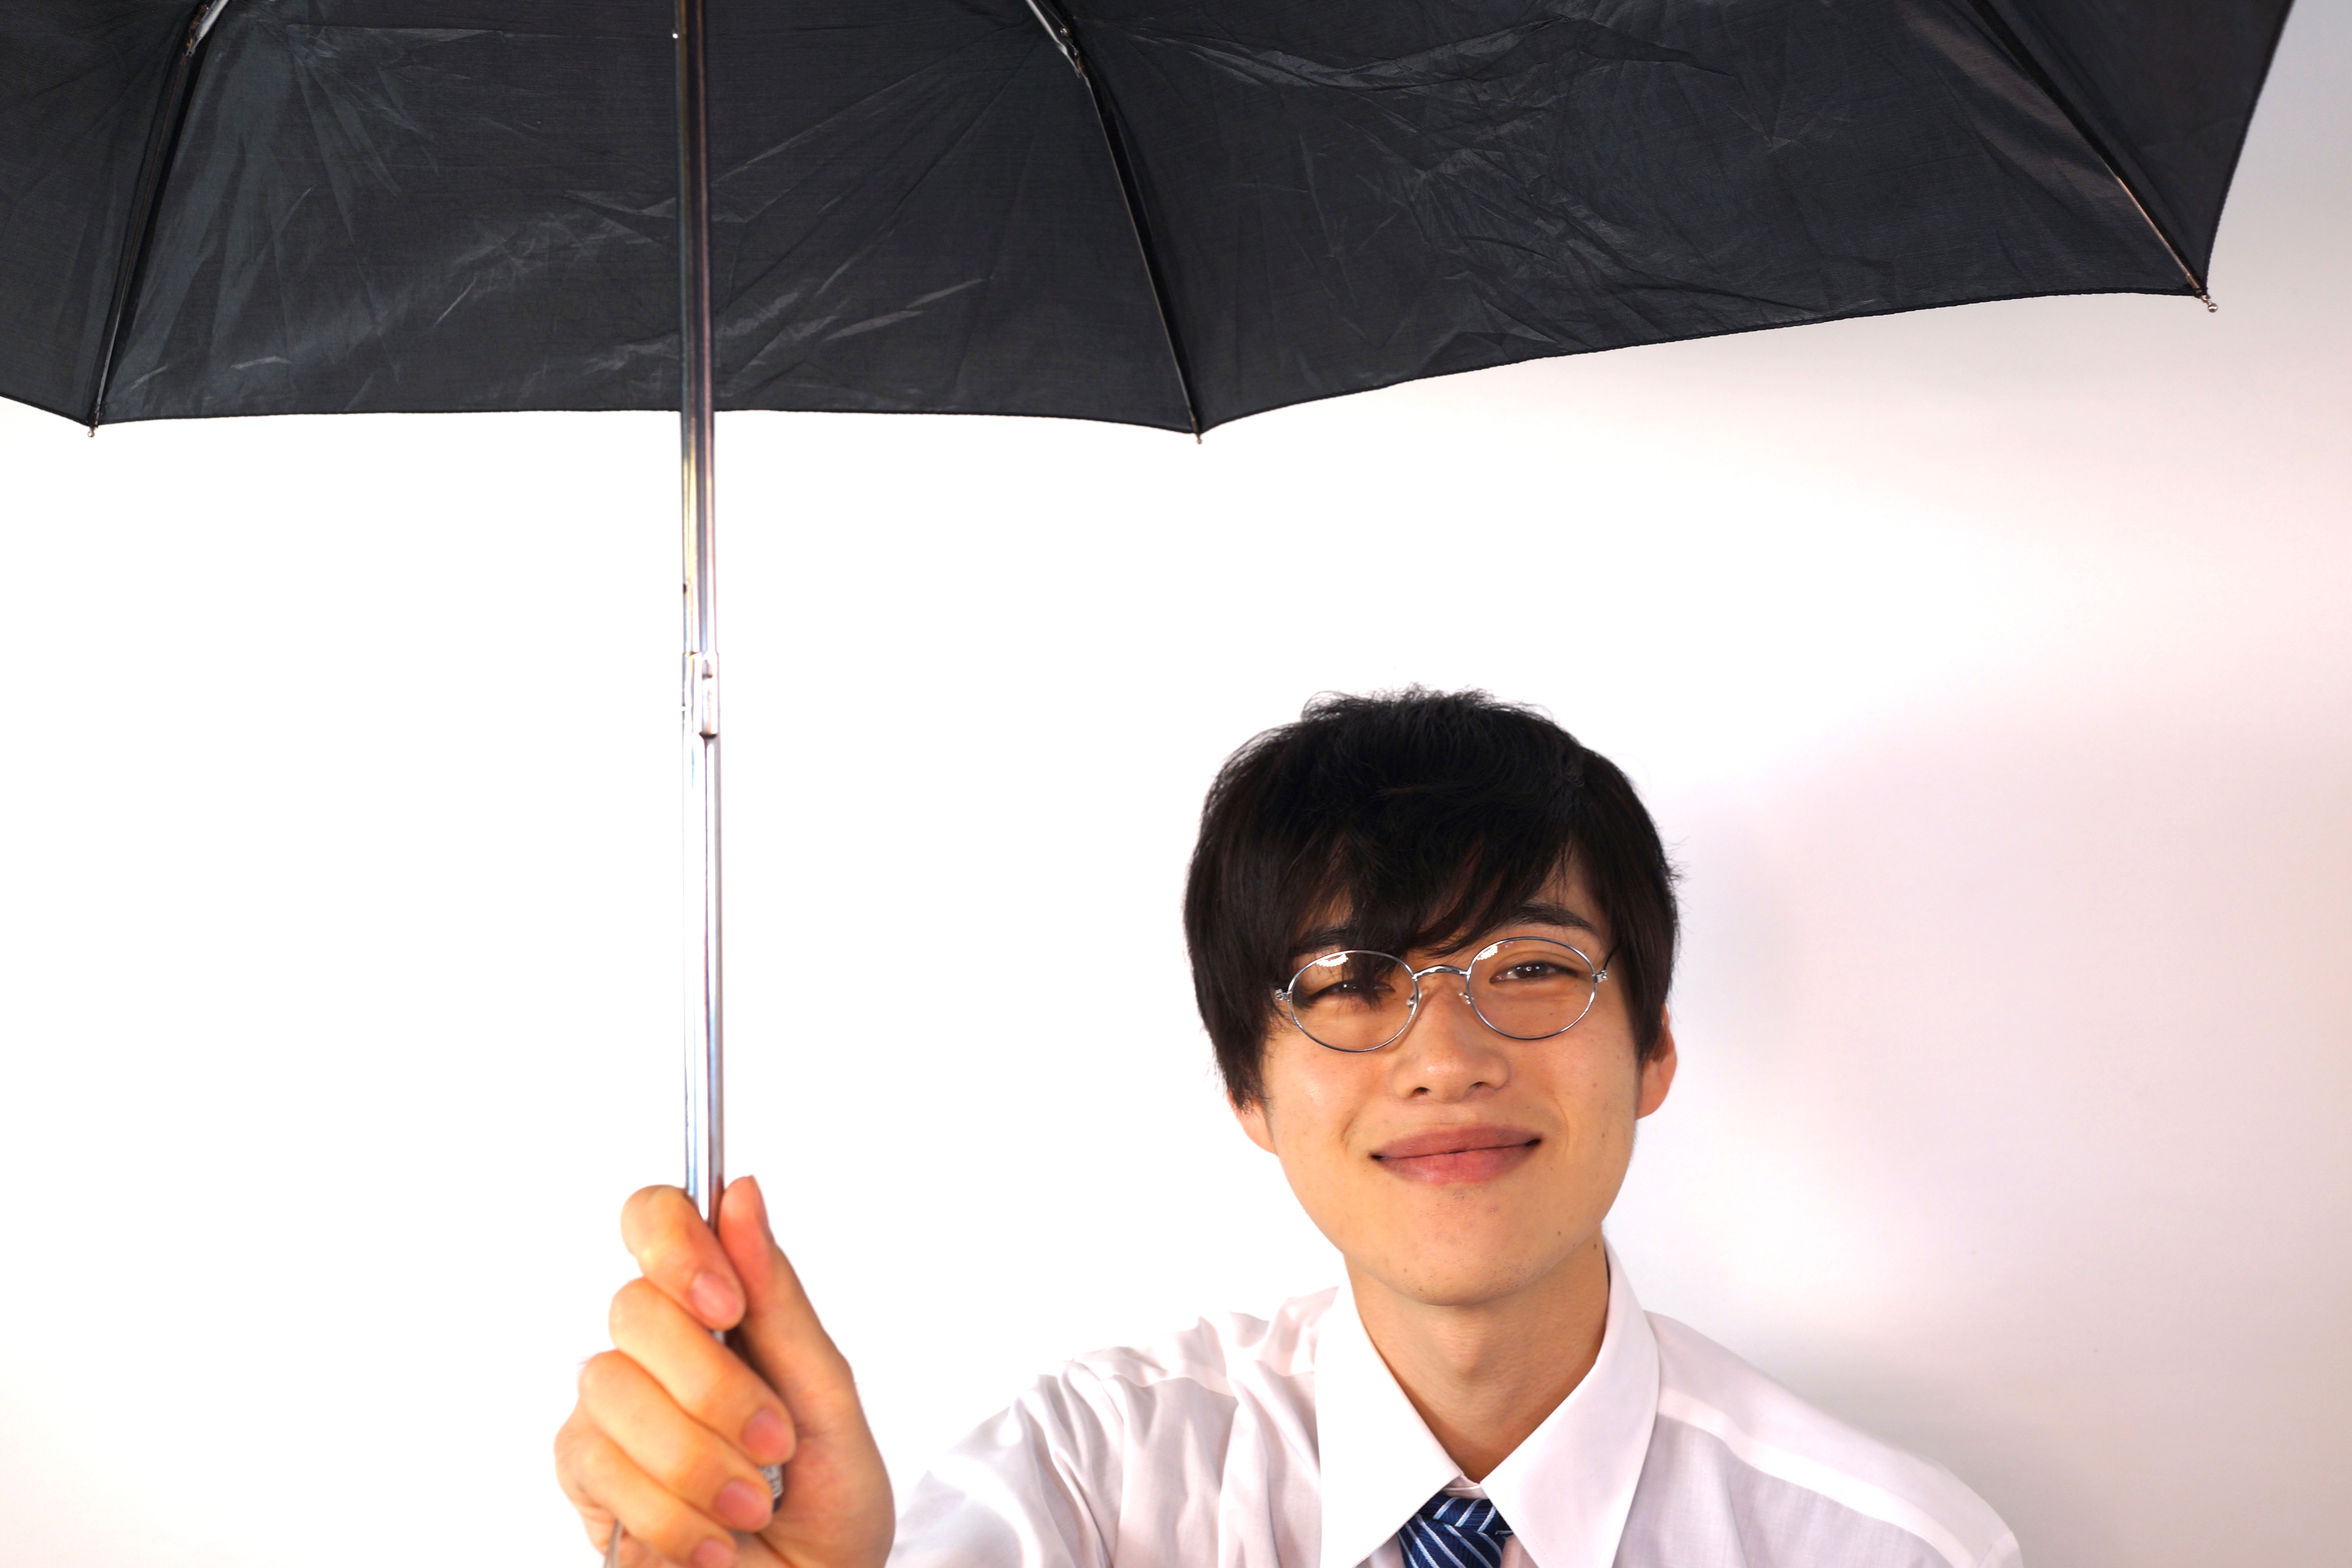 フリー画像素材 笑顔で傘を差し出す町田くん フリー素材のaphoto アフォト